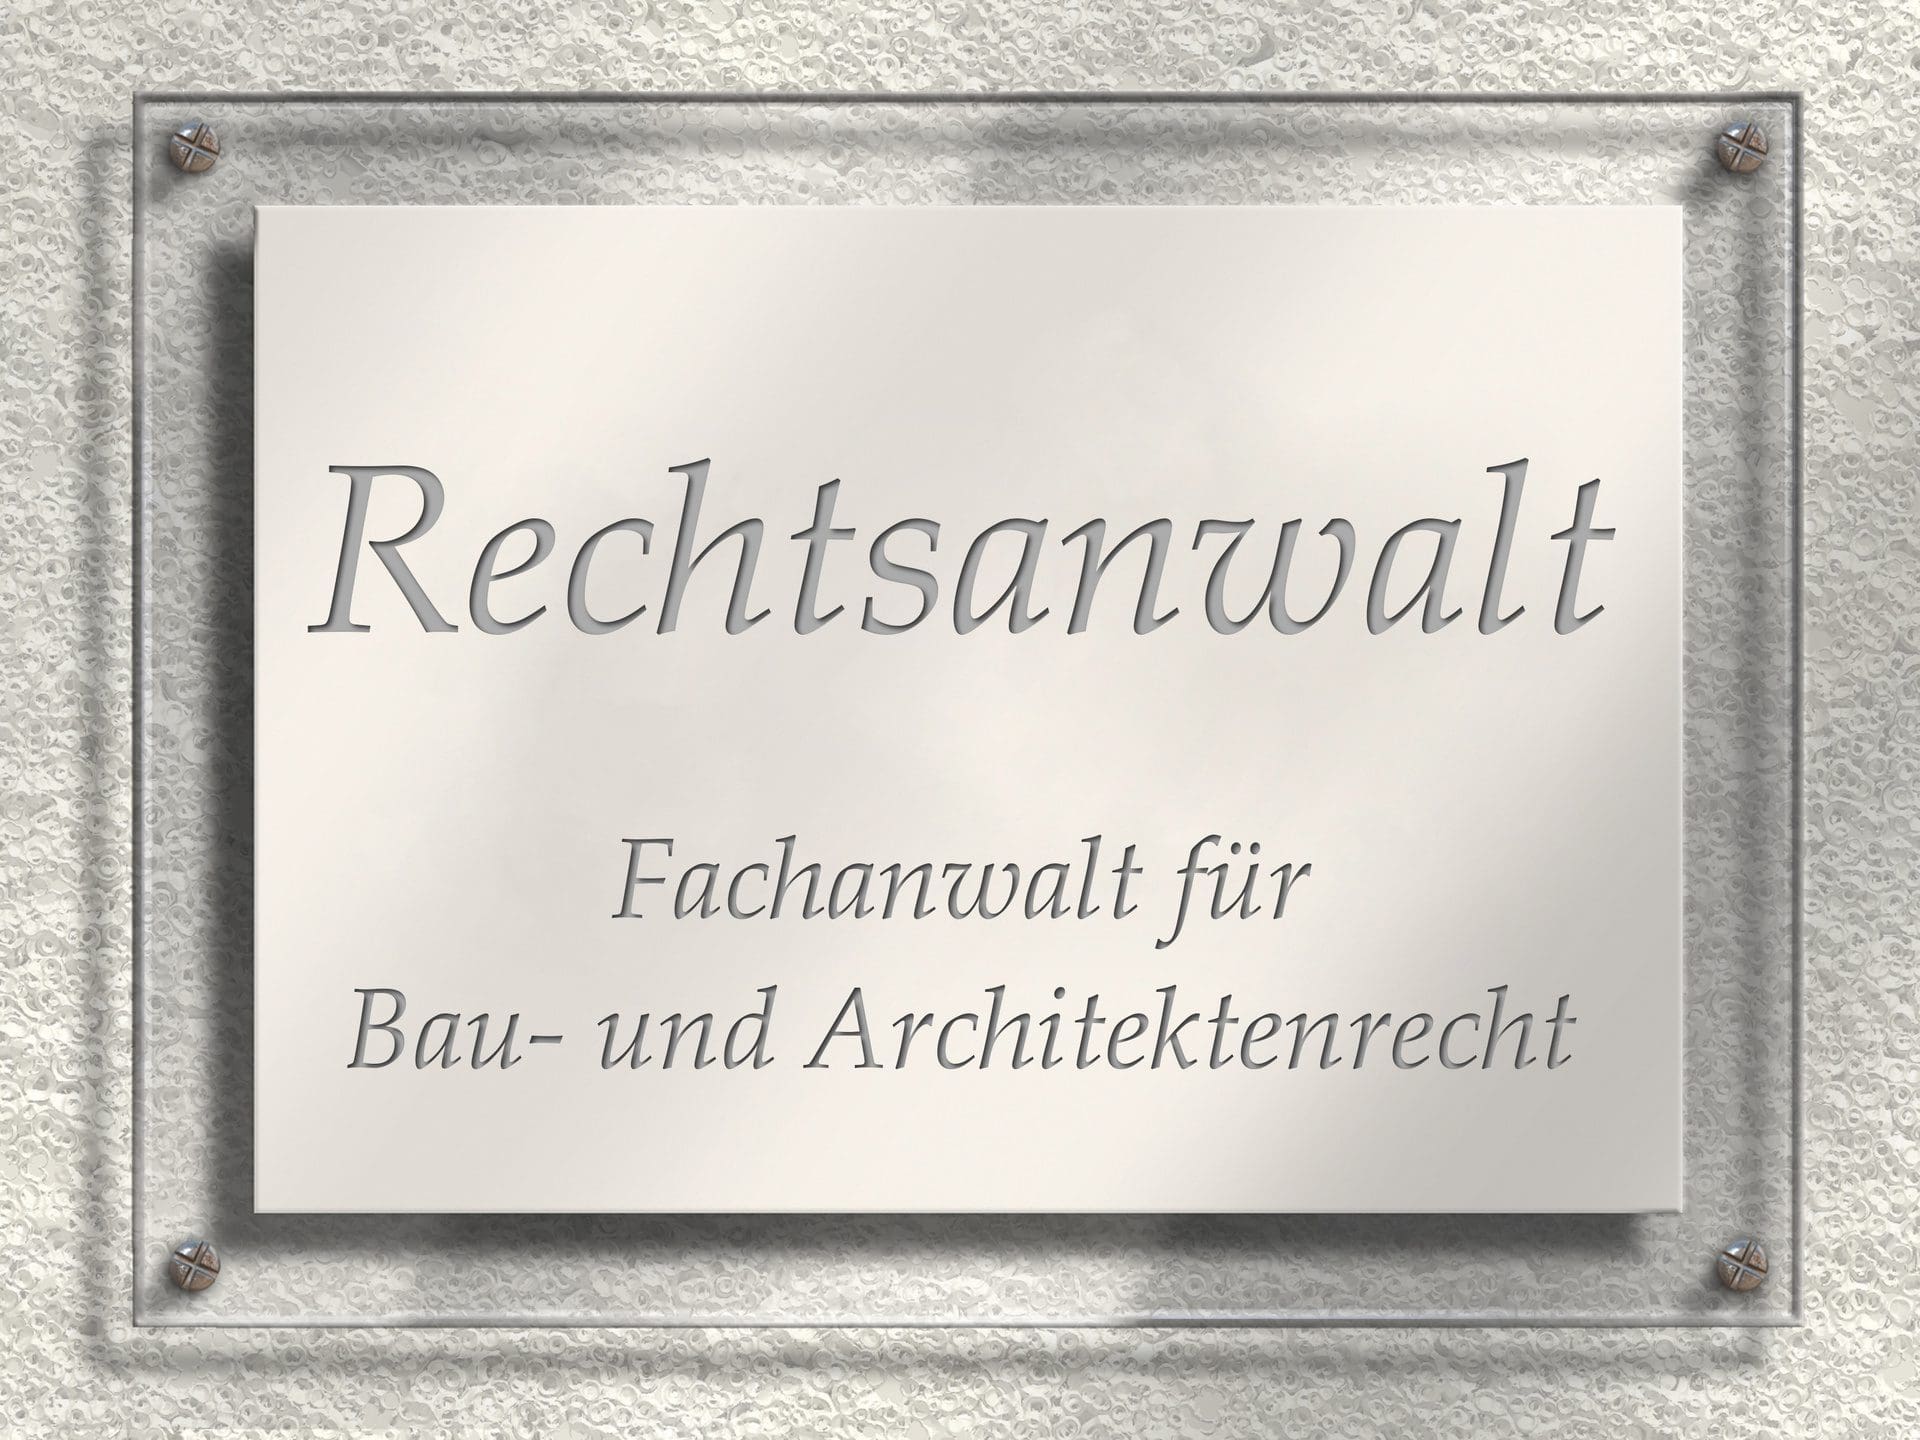 Rechtsanwalt | Fachanwalt für Bau und Architektenrecht (© GreenOptix / stock.adobe.com)